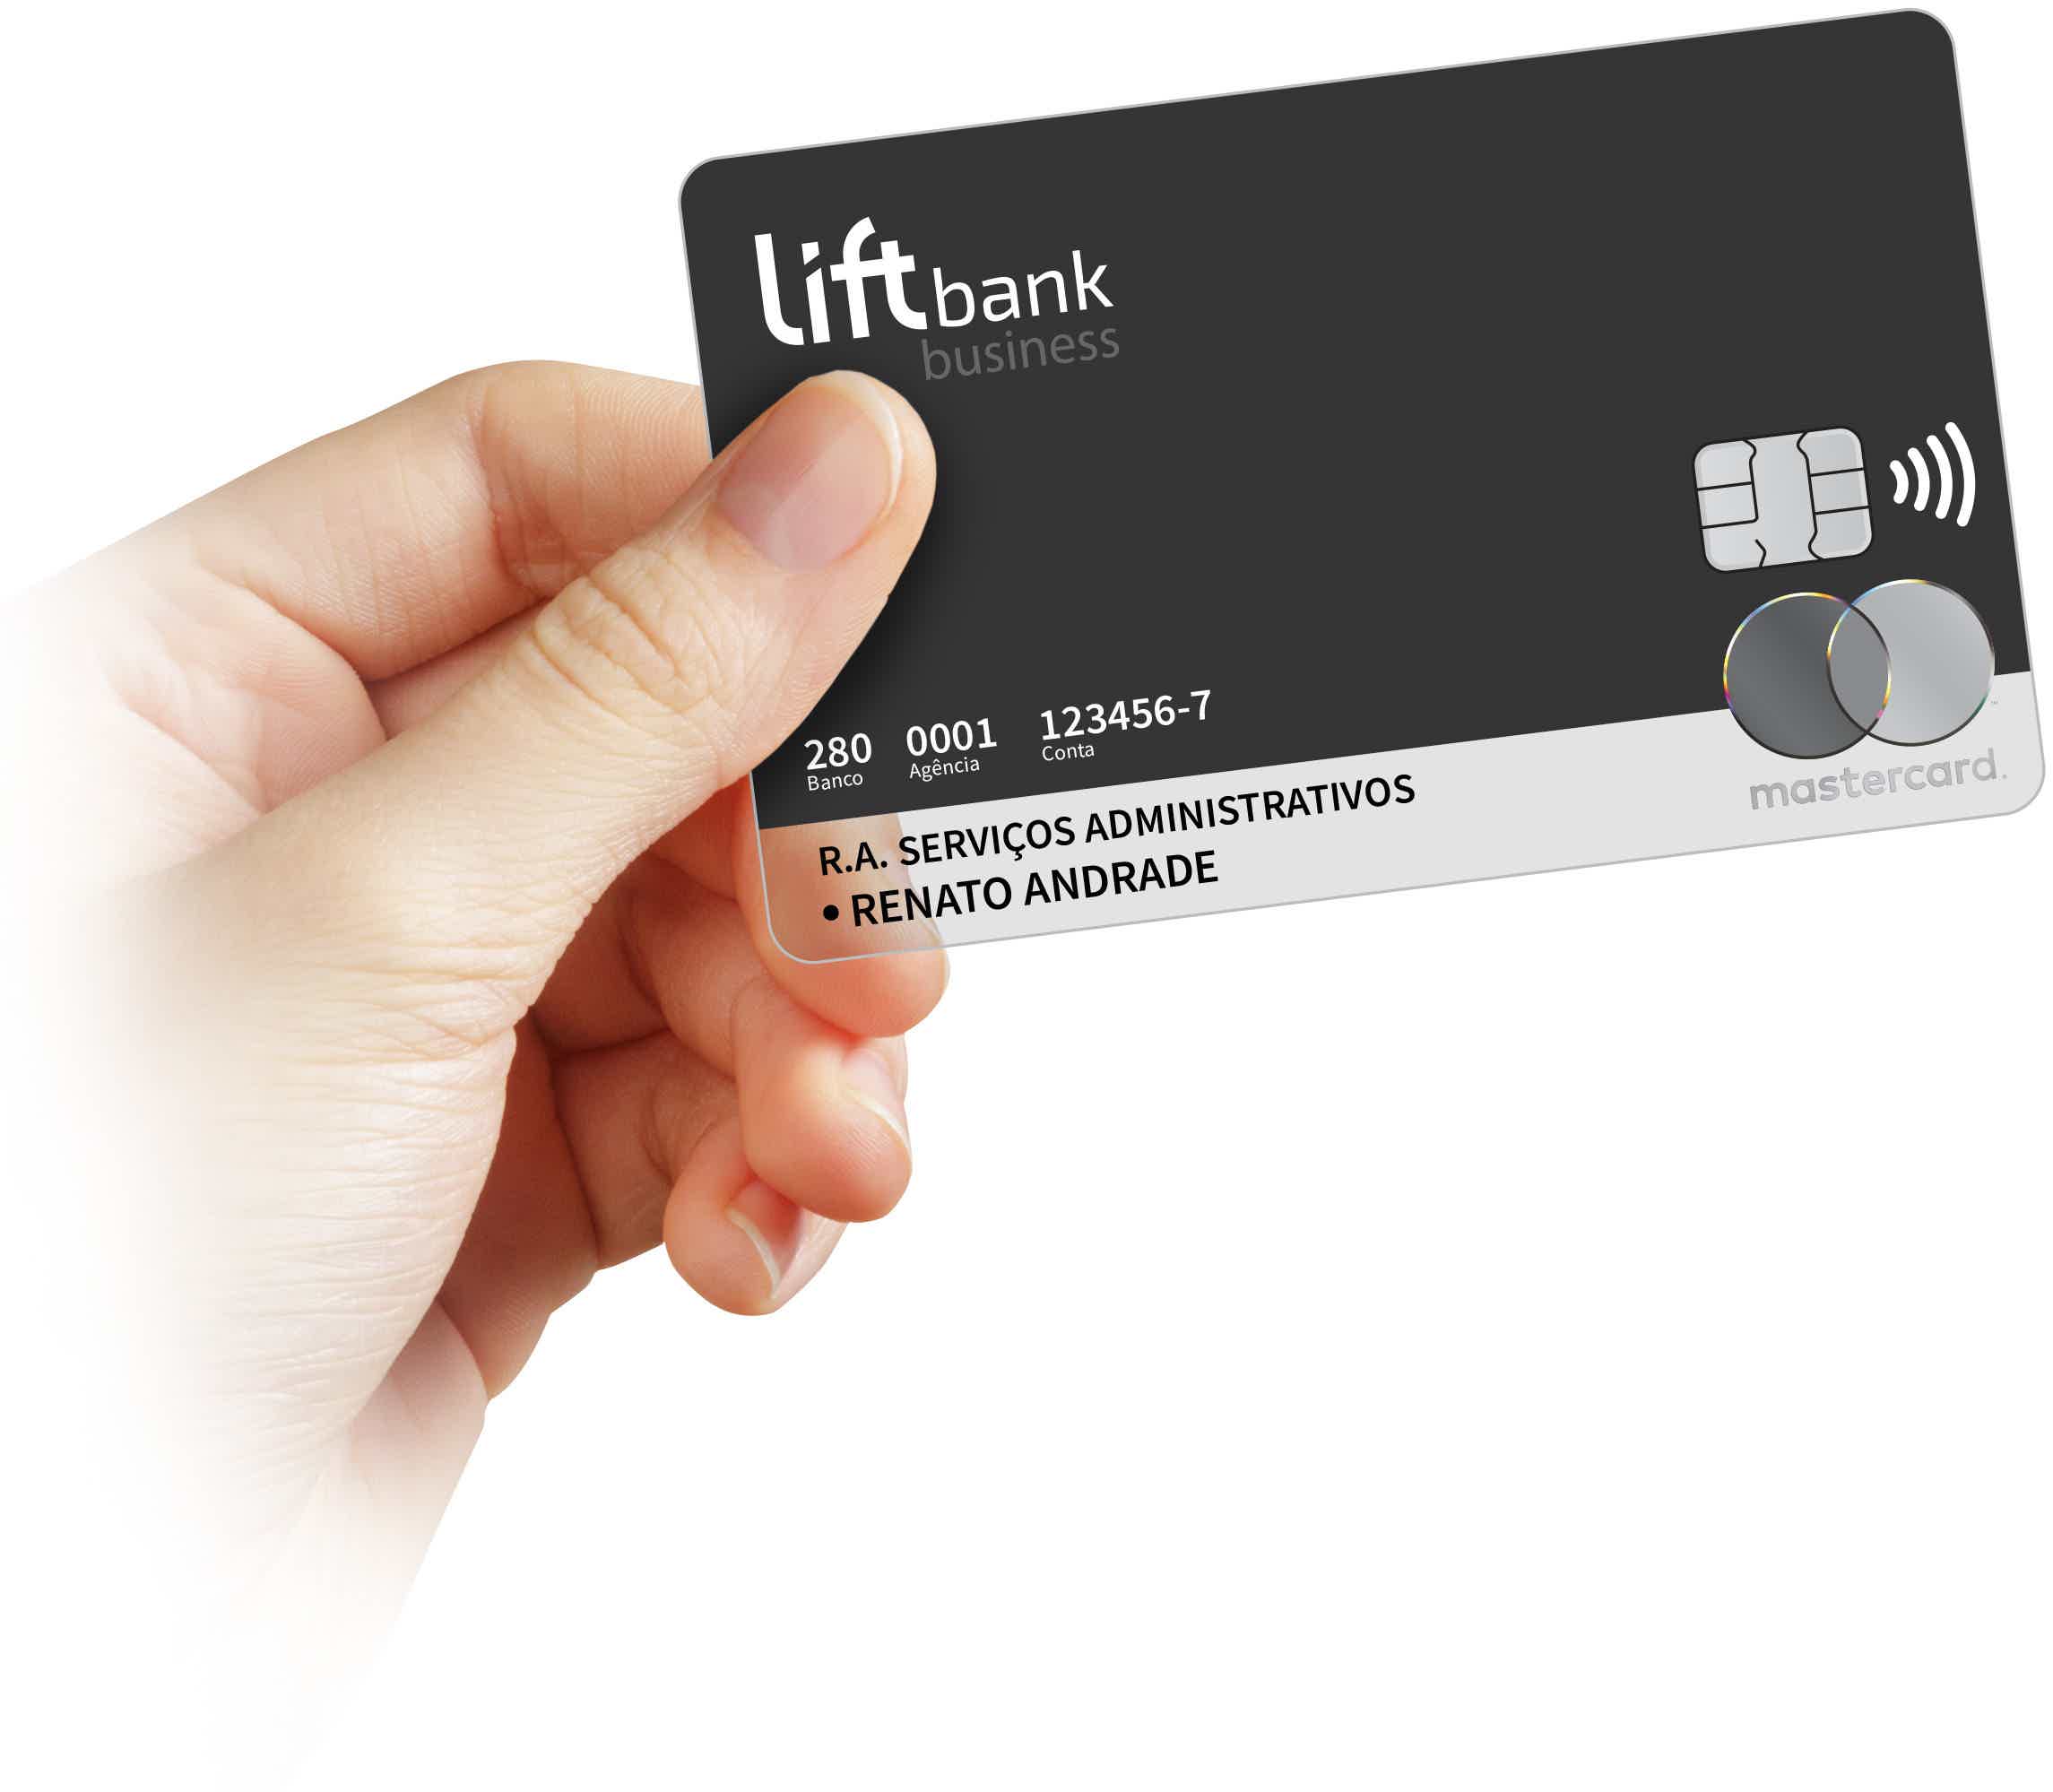 Mas, afinal, como funciona o cartão de crédito LiftBank? Fonte: LiftBank.